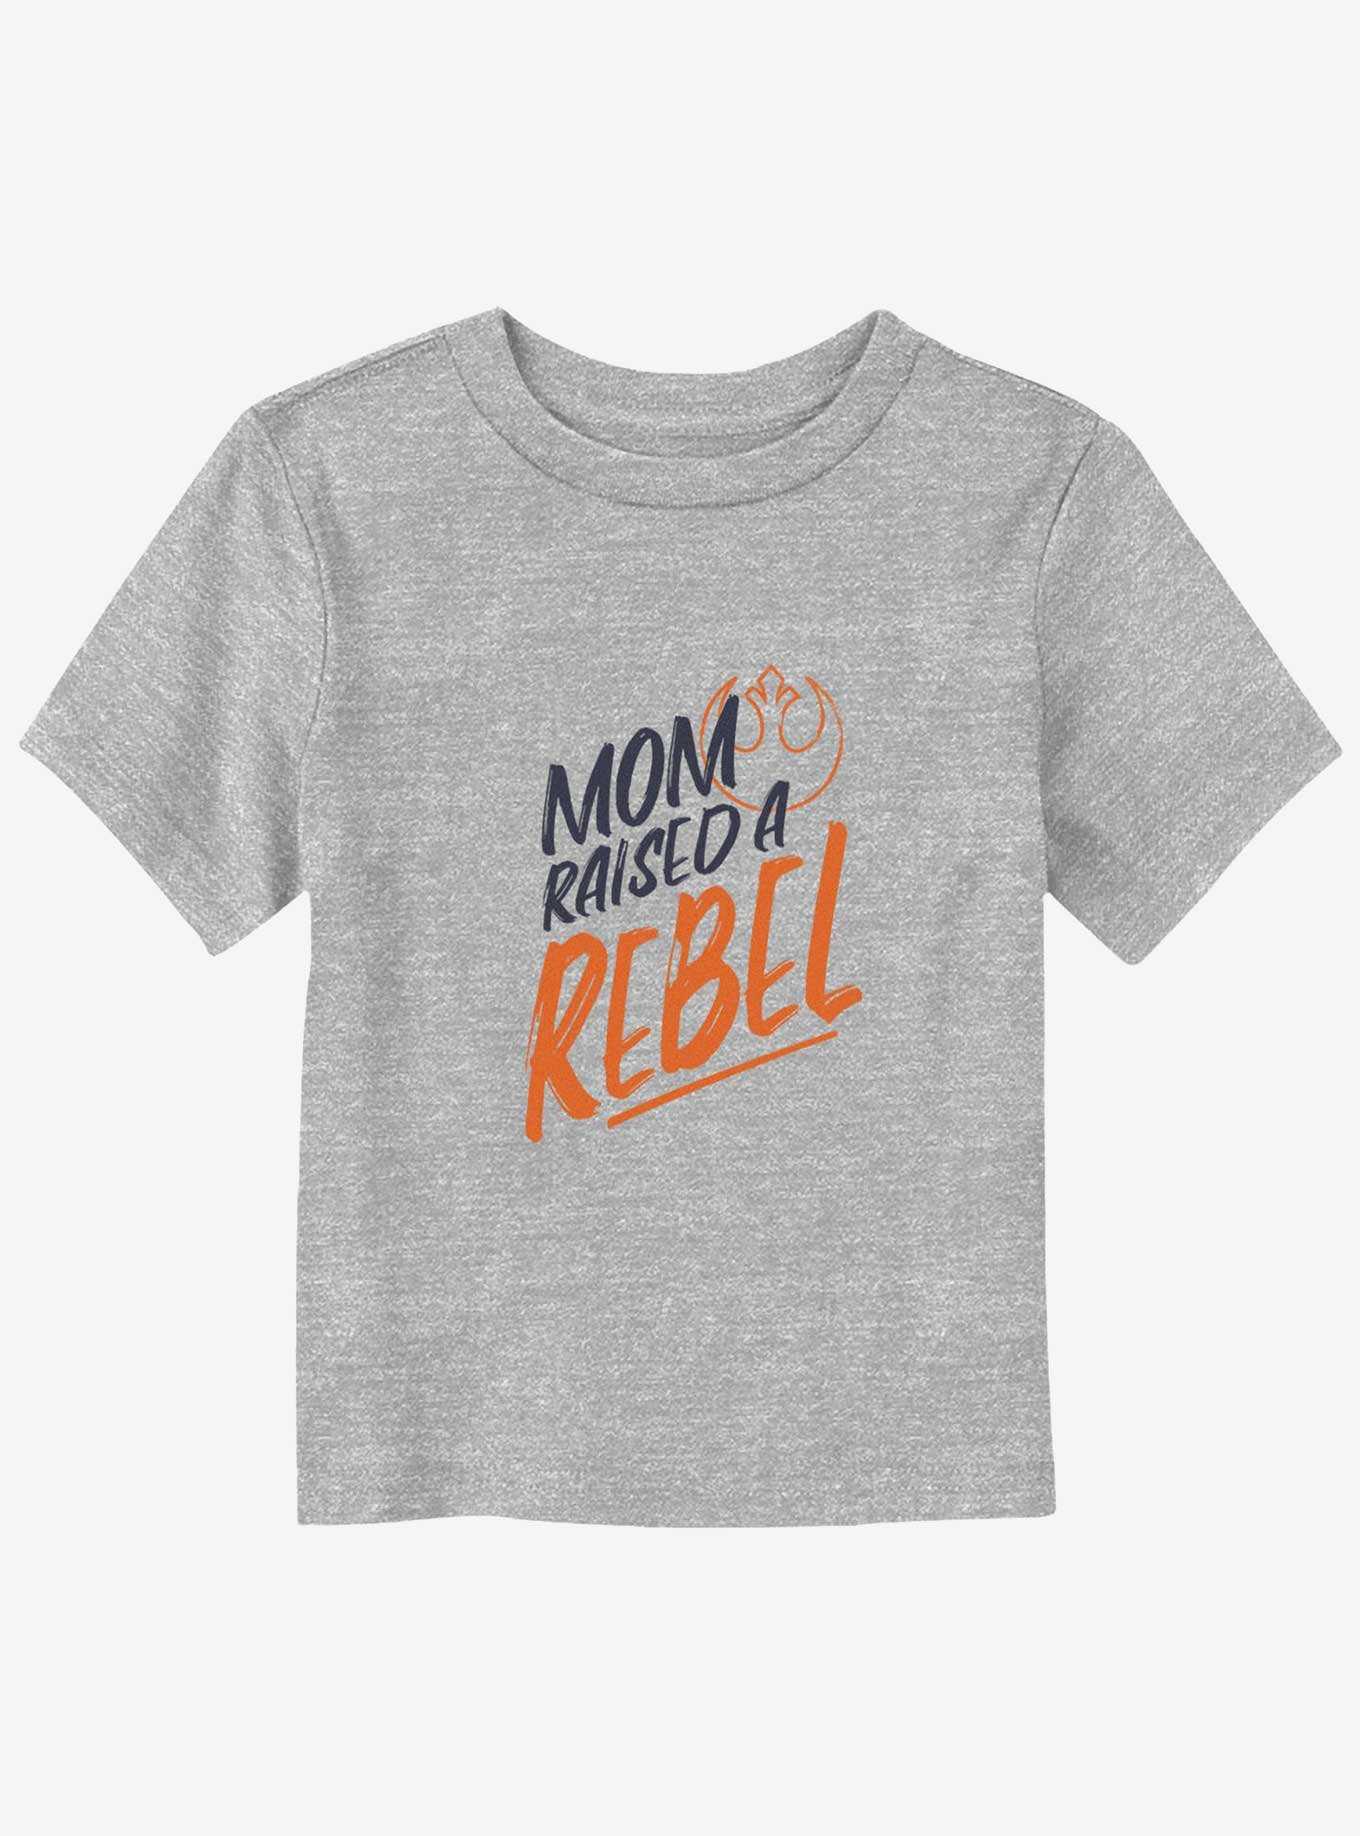 Star Wars Rebel Kid Toddler T-Shirt, , hi-res